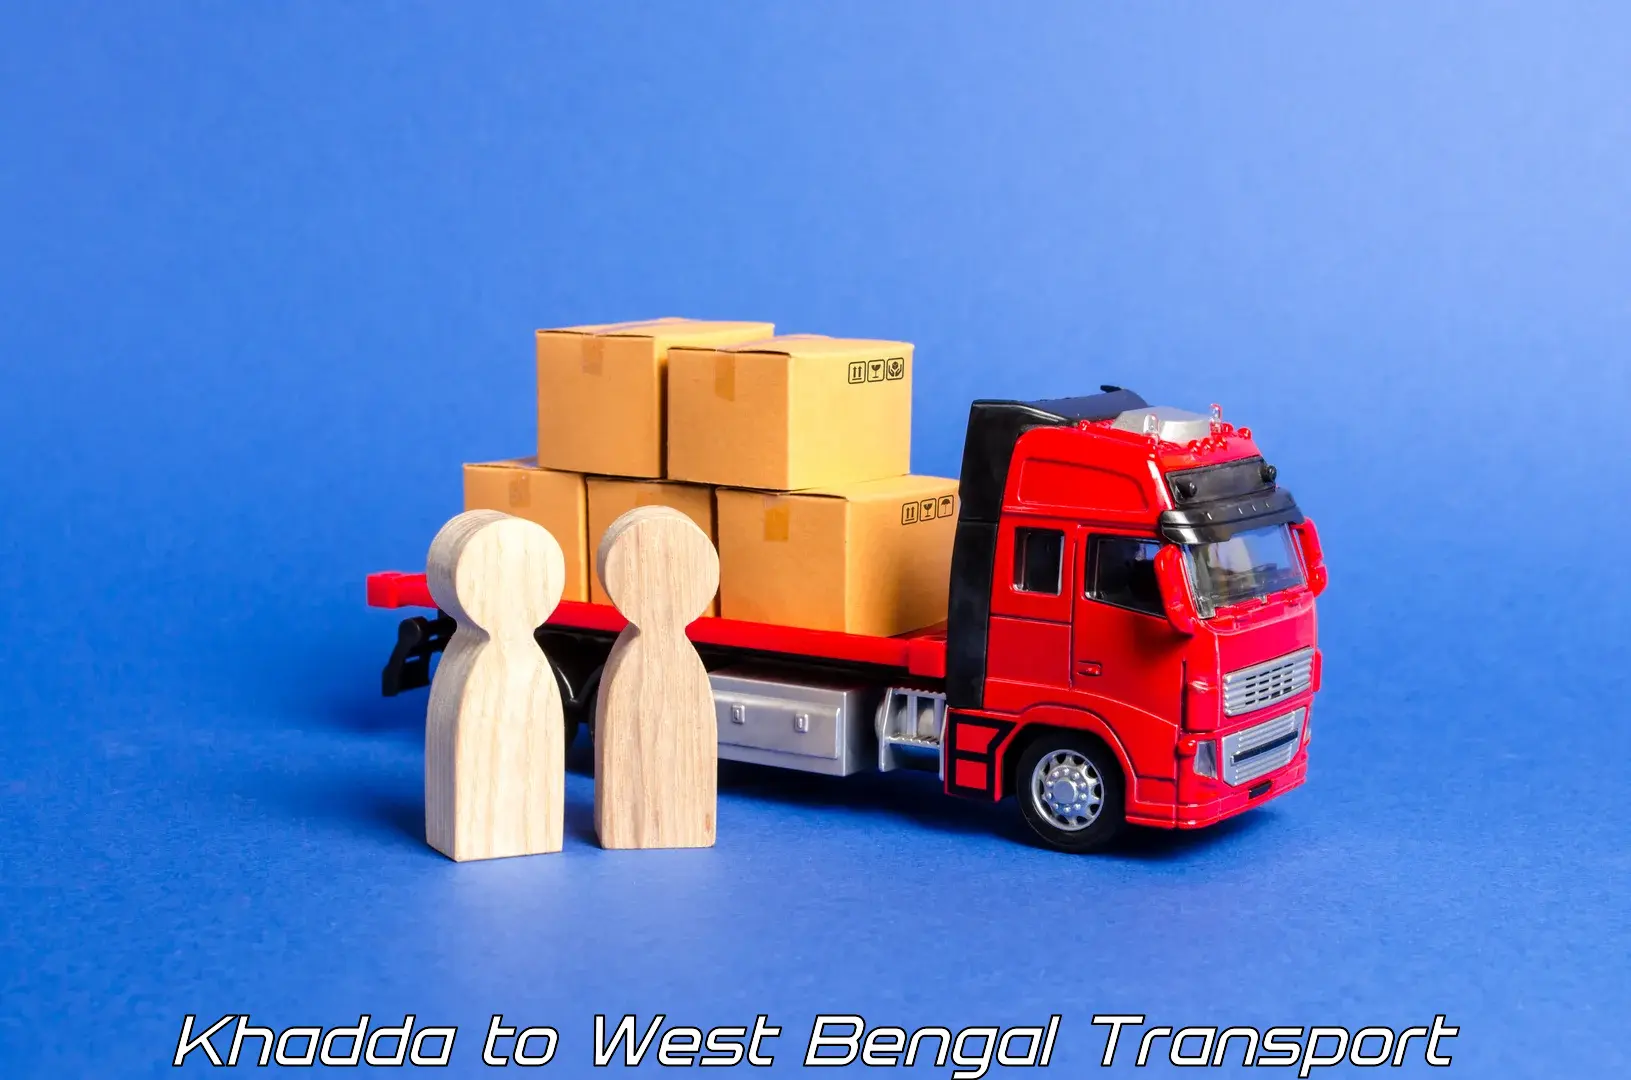 Air cargo transport services Khadda to Pundibari